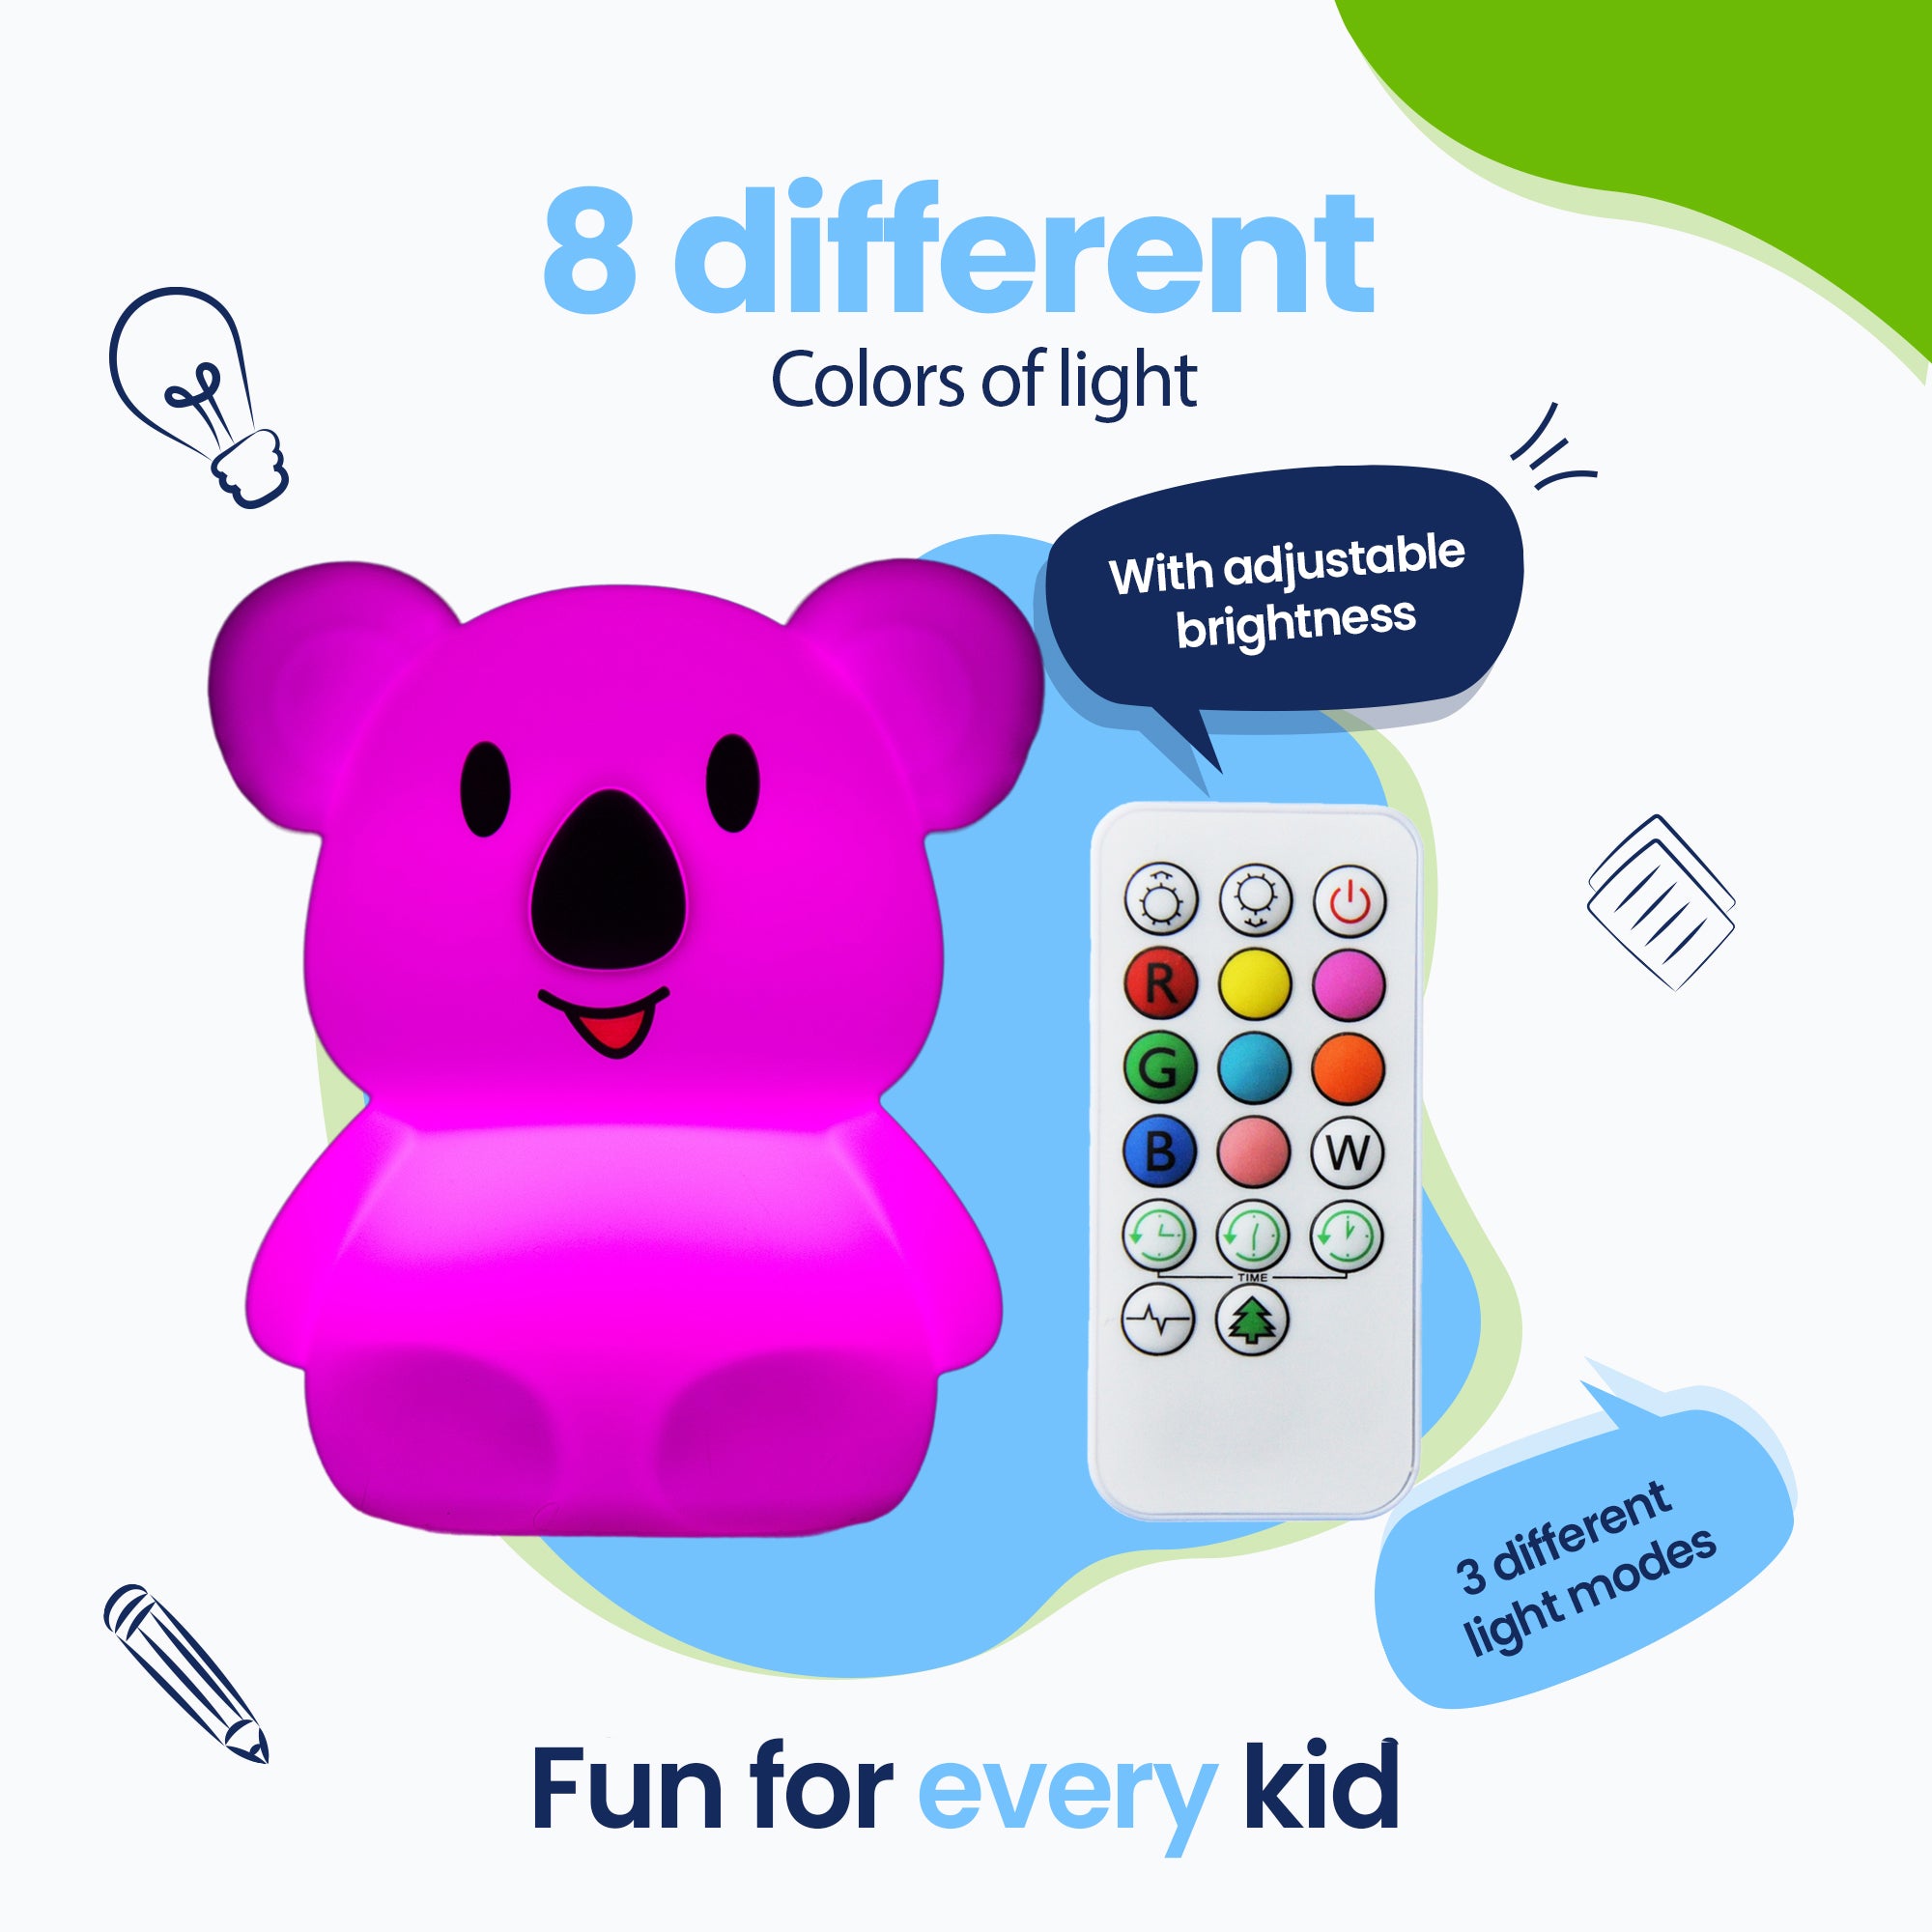 8 colores diferentes de luz - 3 modos de luz diferentes - Diversión para todos los niños